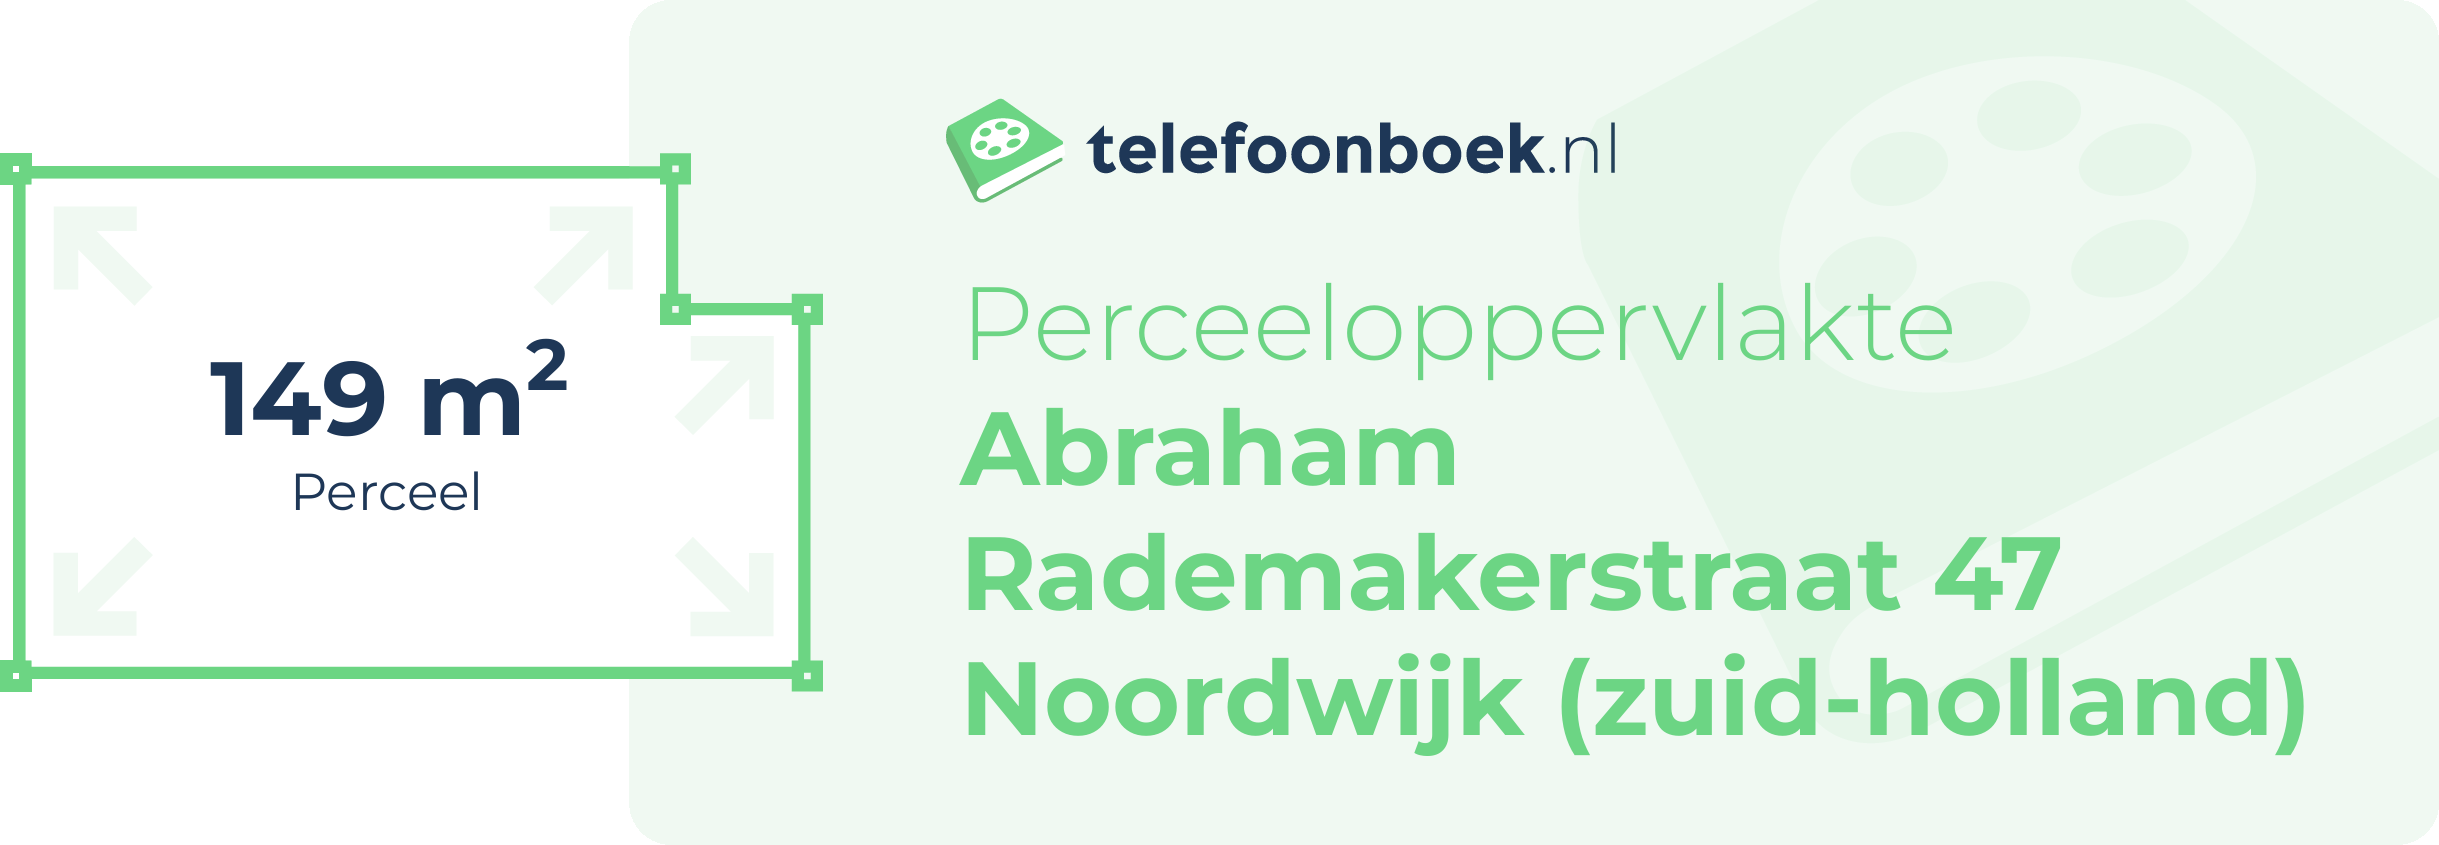 Perceeloppervlakte Abraham Rademakerstraat 47 Noordwijk (Zuid-Holland)